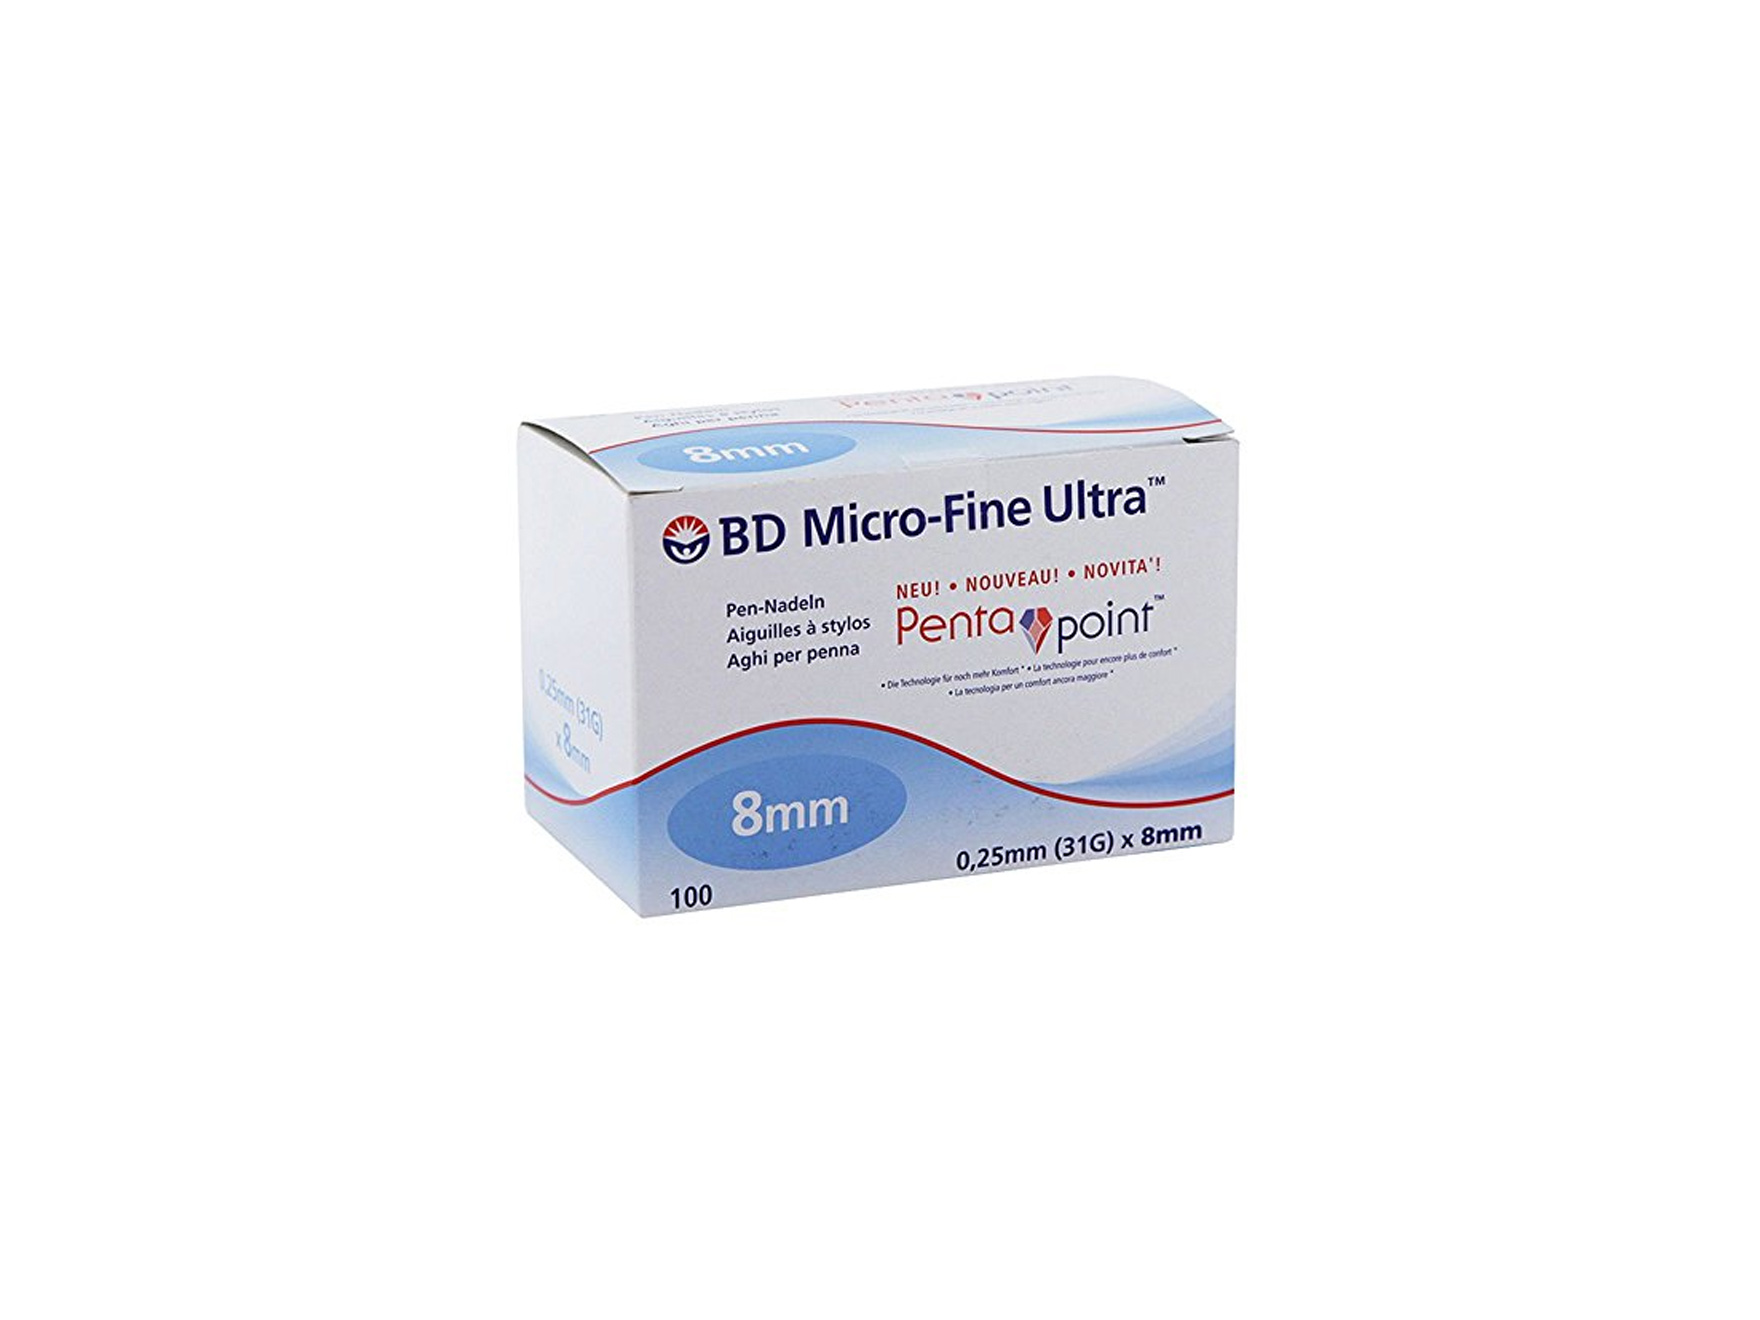 Micro-Fine™ aiguilles pour stylo injecteur - 31G x 8 mm - bleu - 1 x 100 pcs